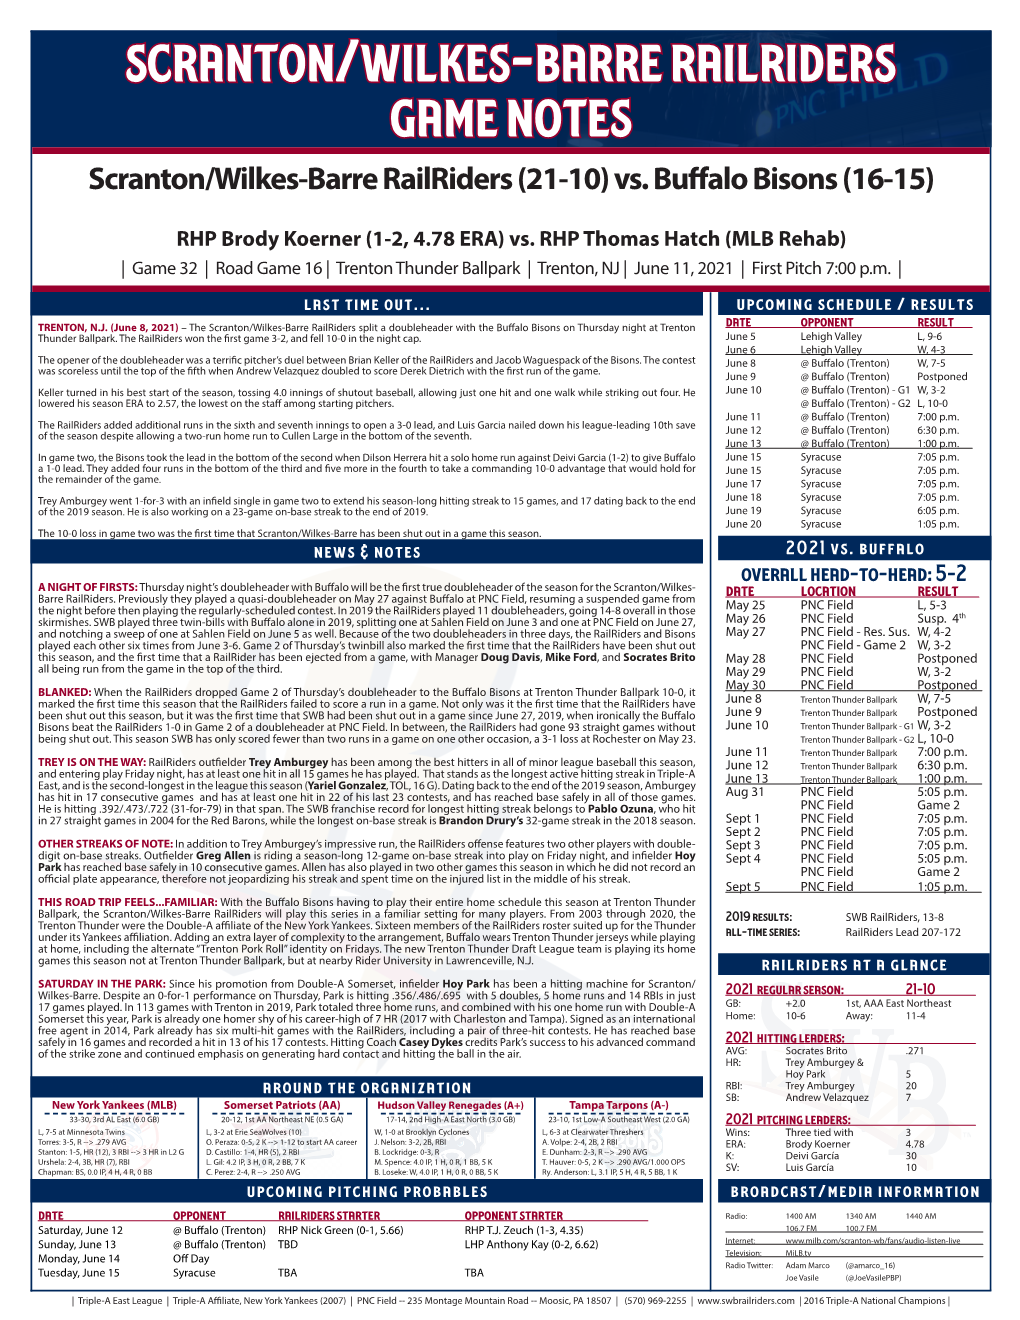 Scranton/Wilkes-Barre Railriders Game Notes Scranton/Wilkes-Barre Railriders (21-10) Vs